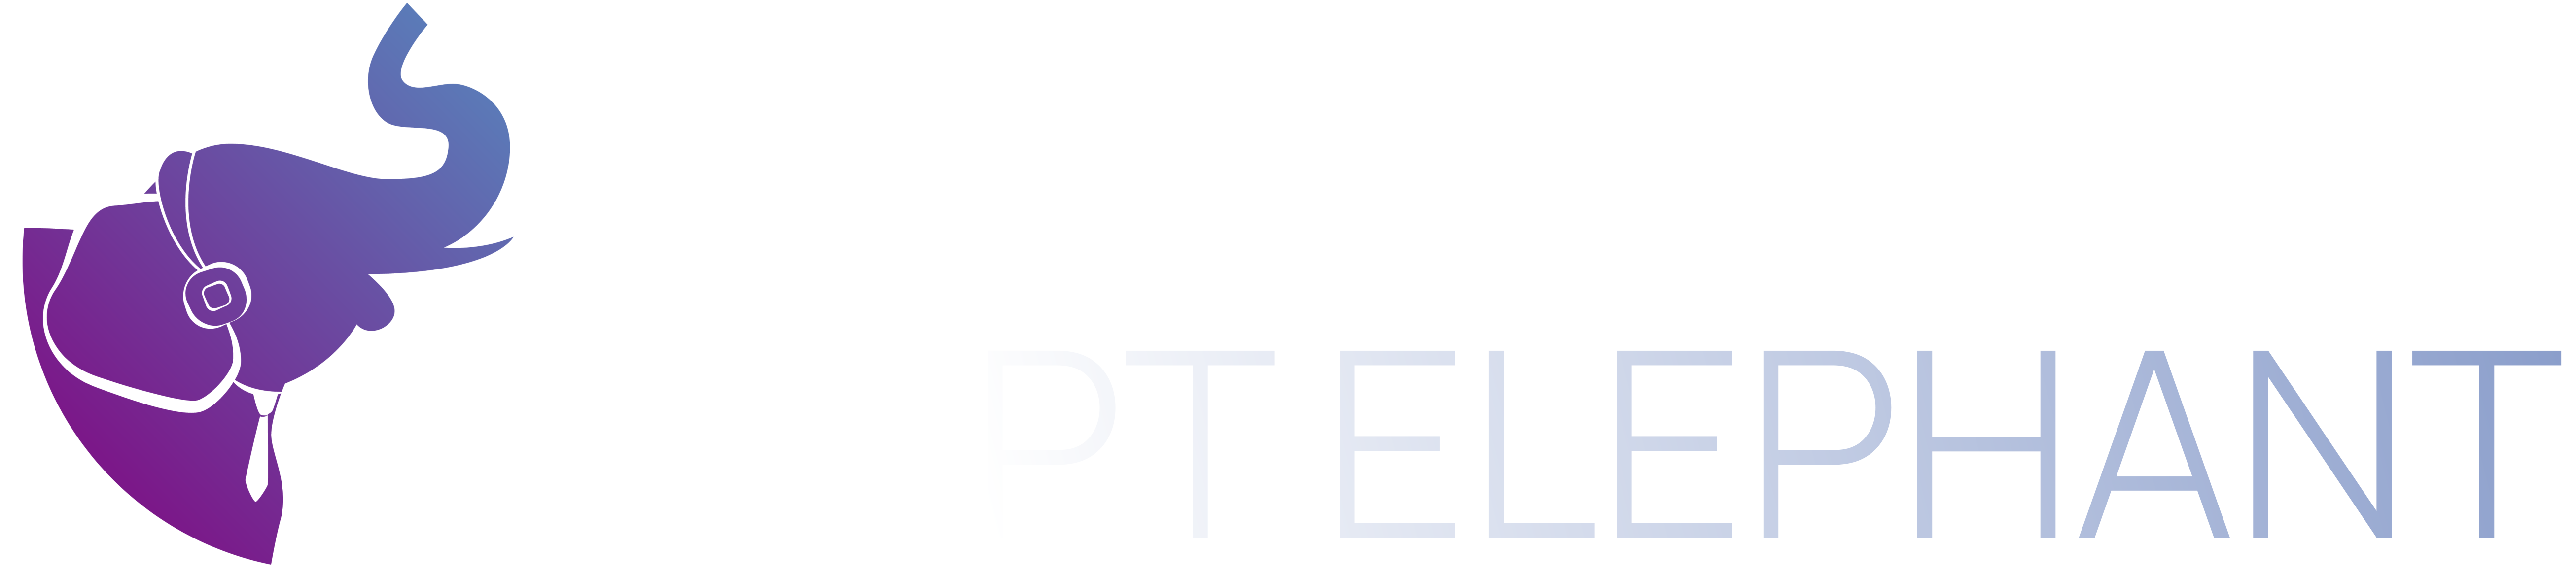 Script Elephant logo